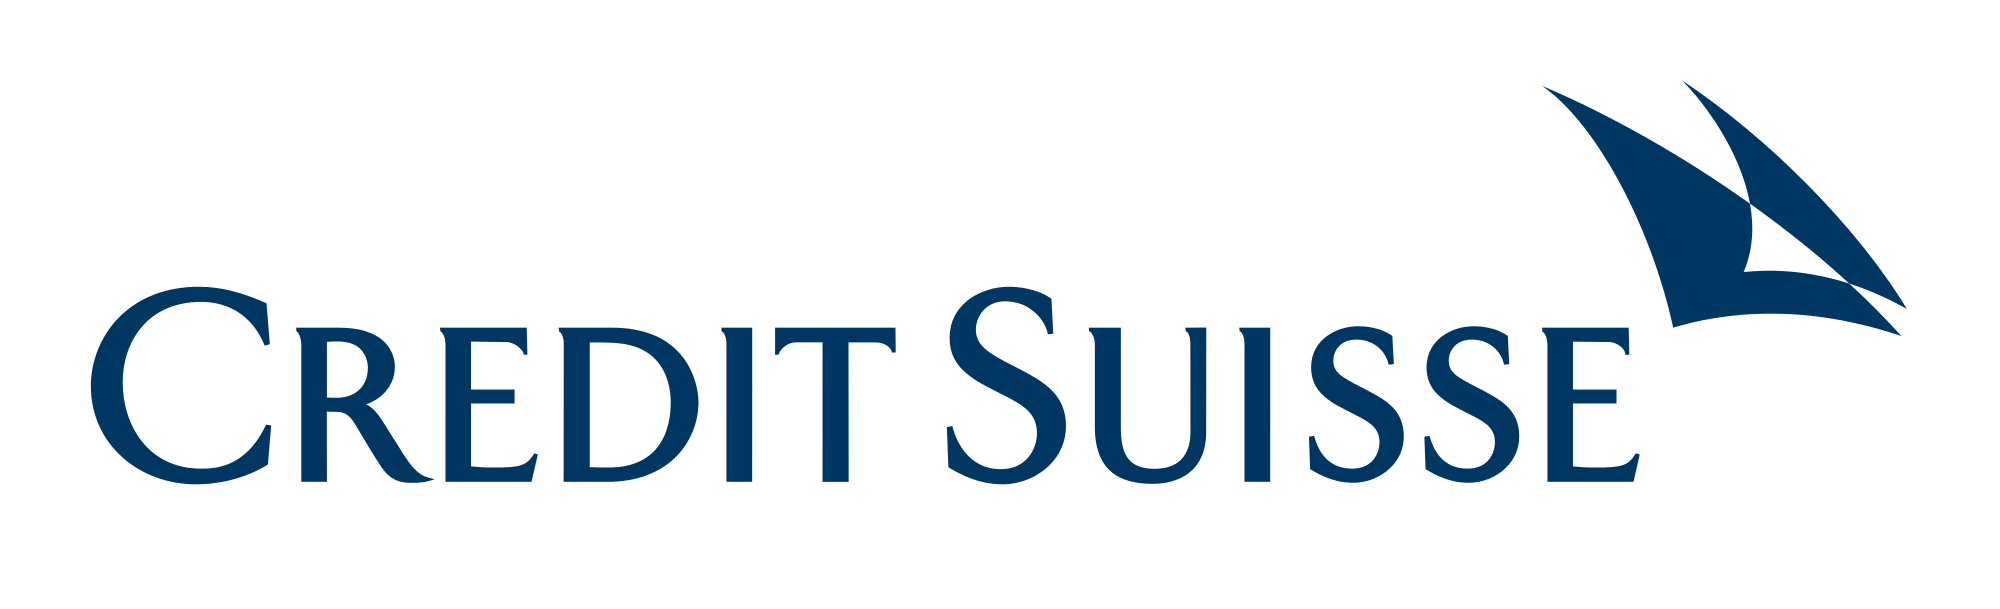 Display Image of Credit Suisse